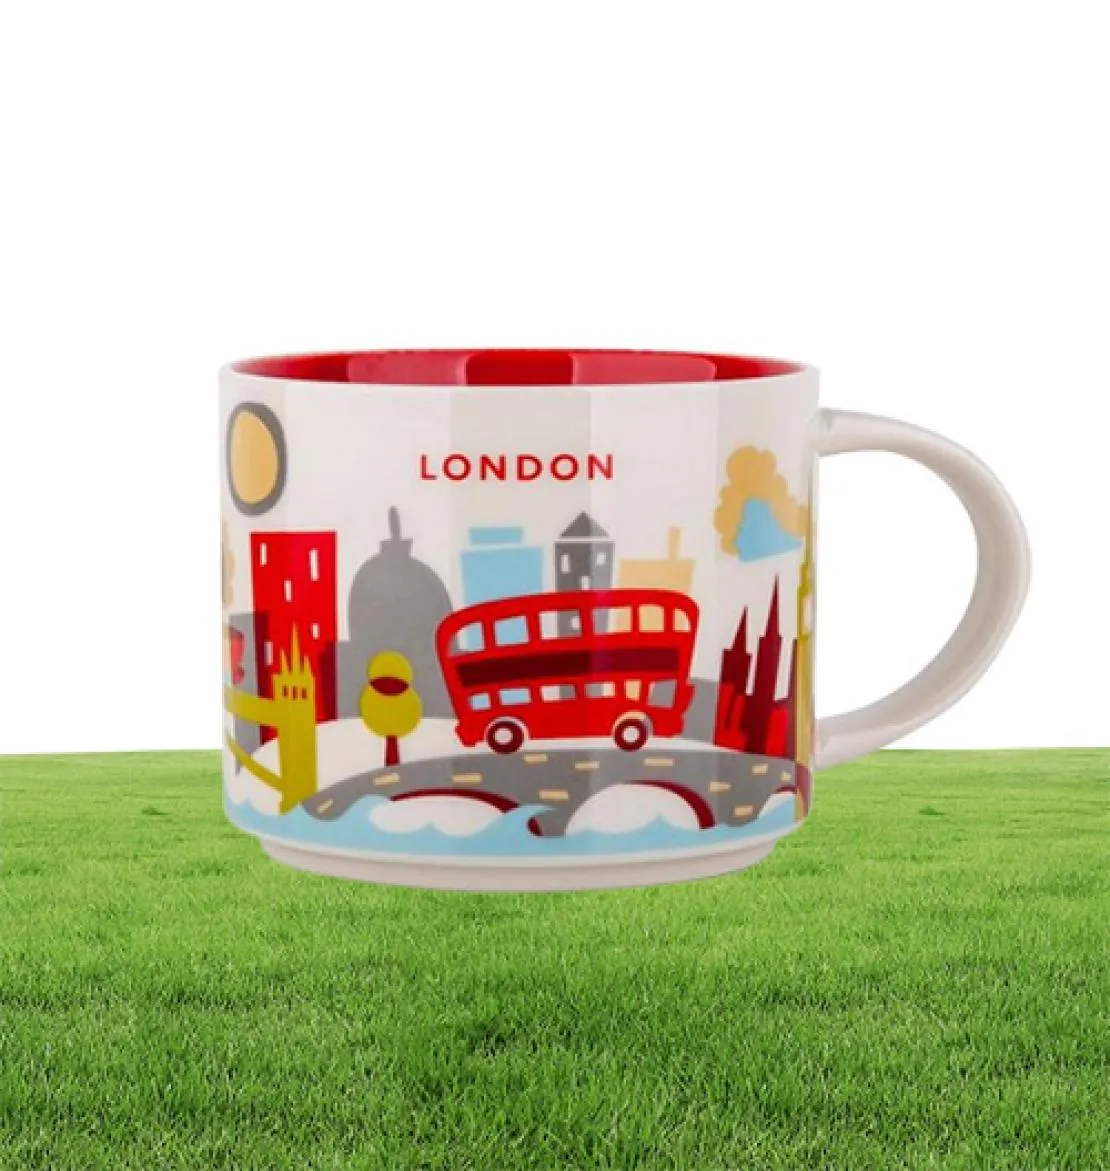 14oz capaciteit keramische stad mok Brits steden beste koffie mug cup met originele doos London City6150731